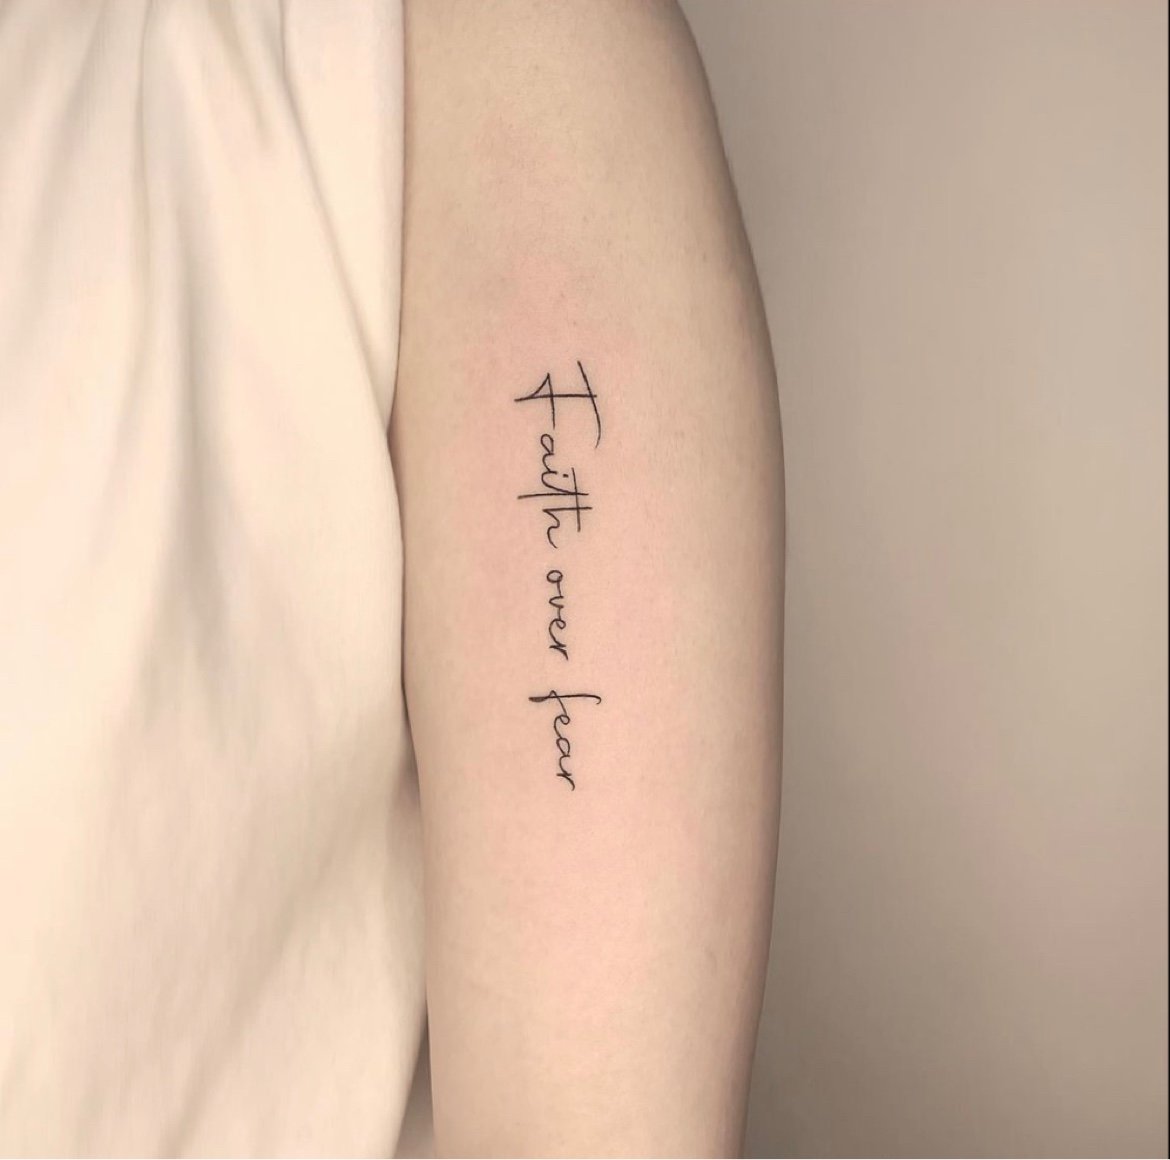 StiCool Tattoos, Temporary Tattoo, Semi-permanent Tattoos, fake tattoos